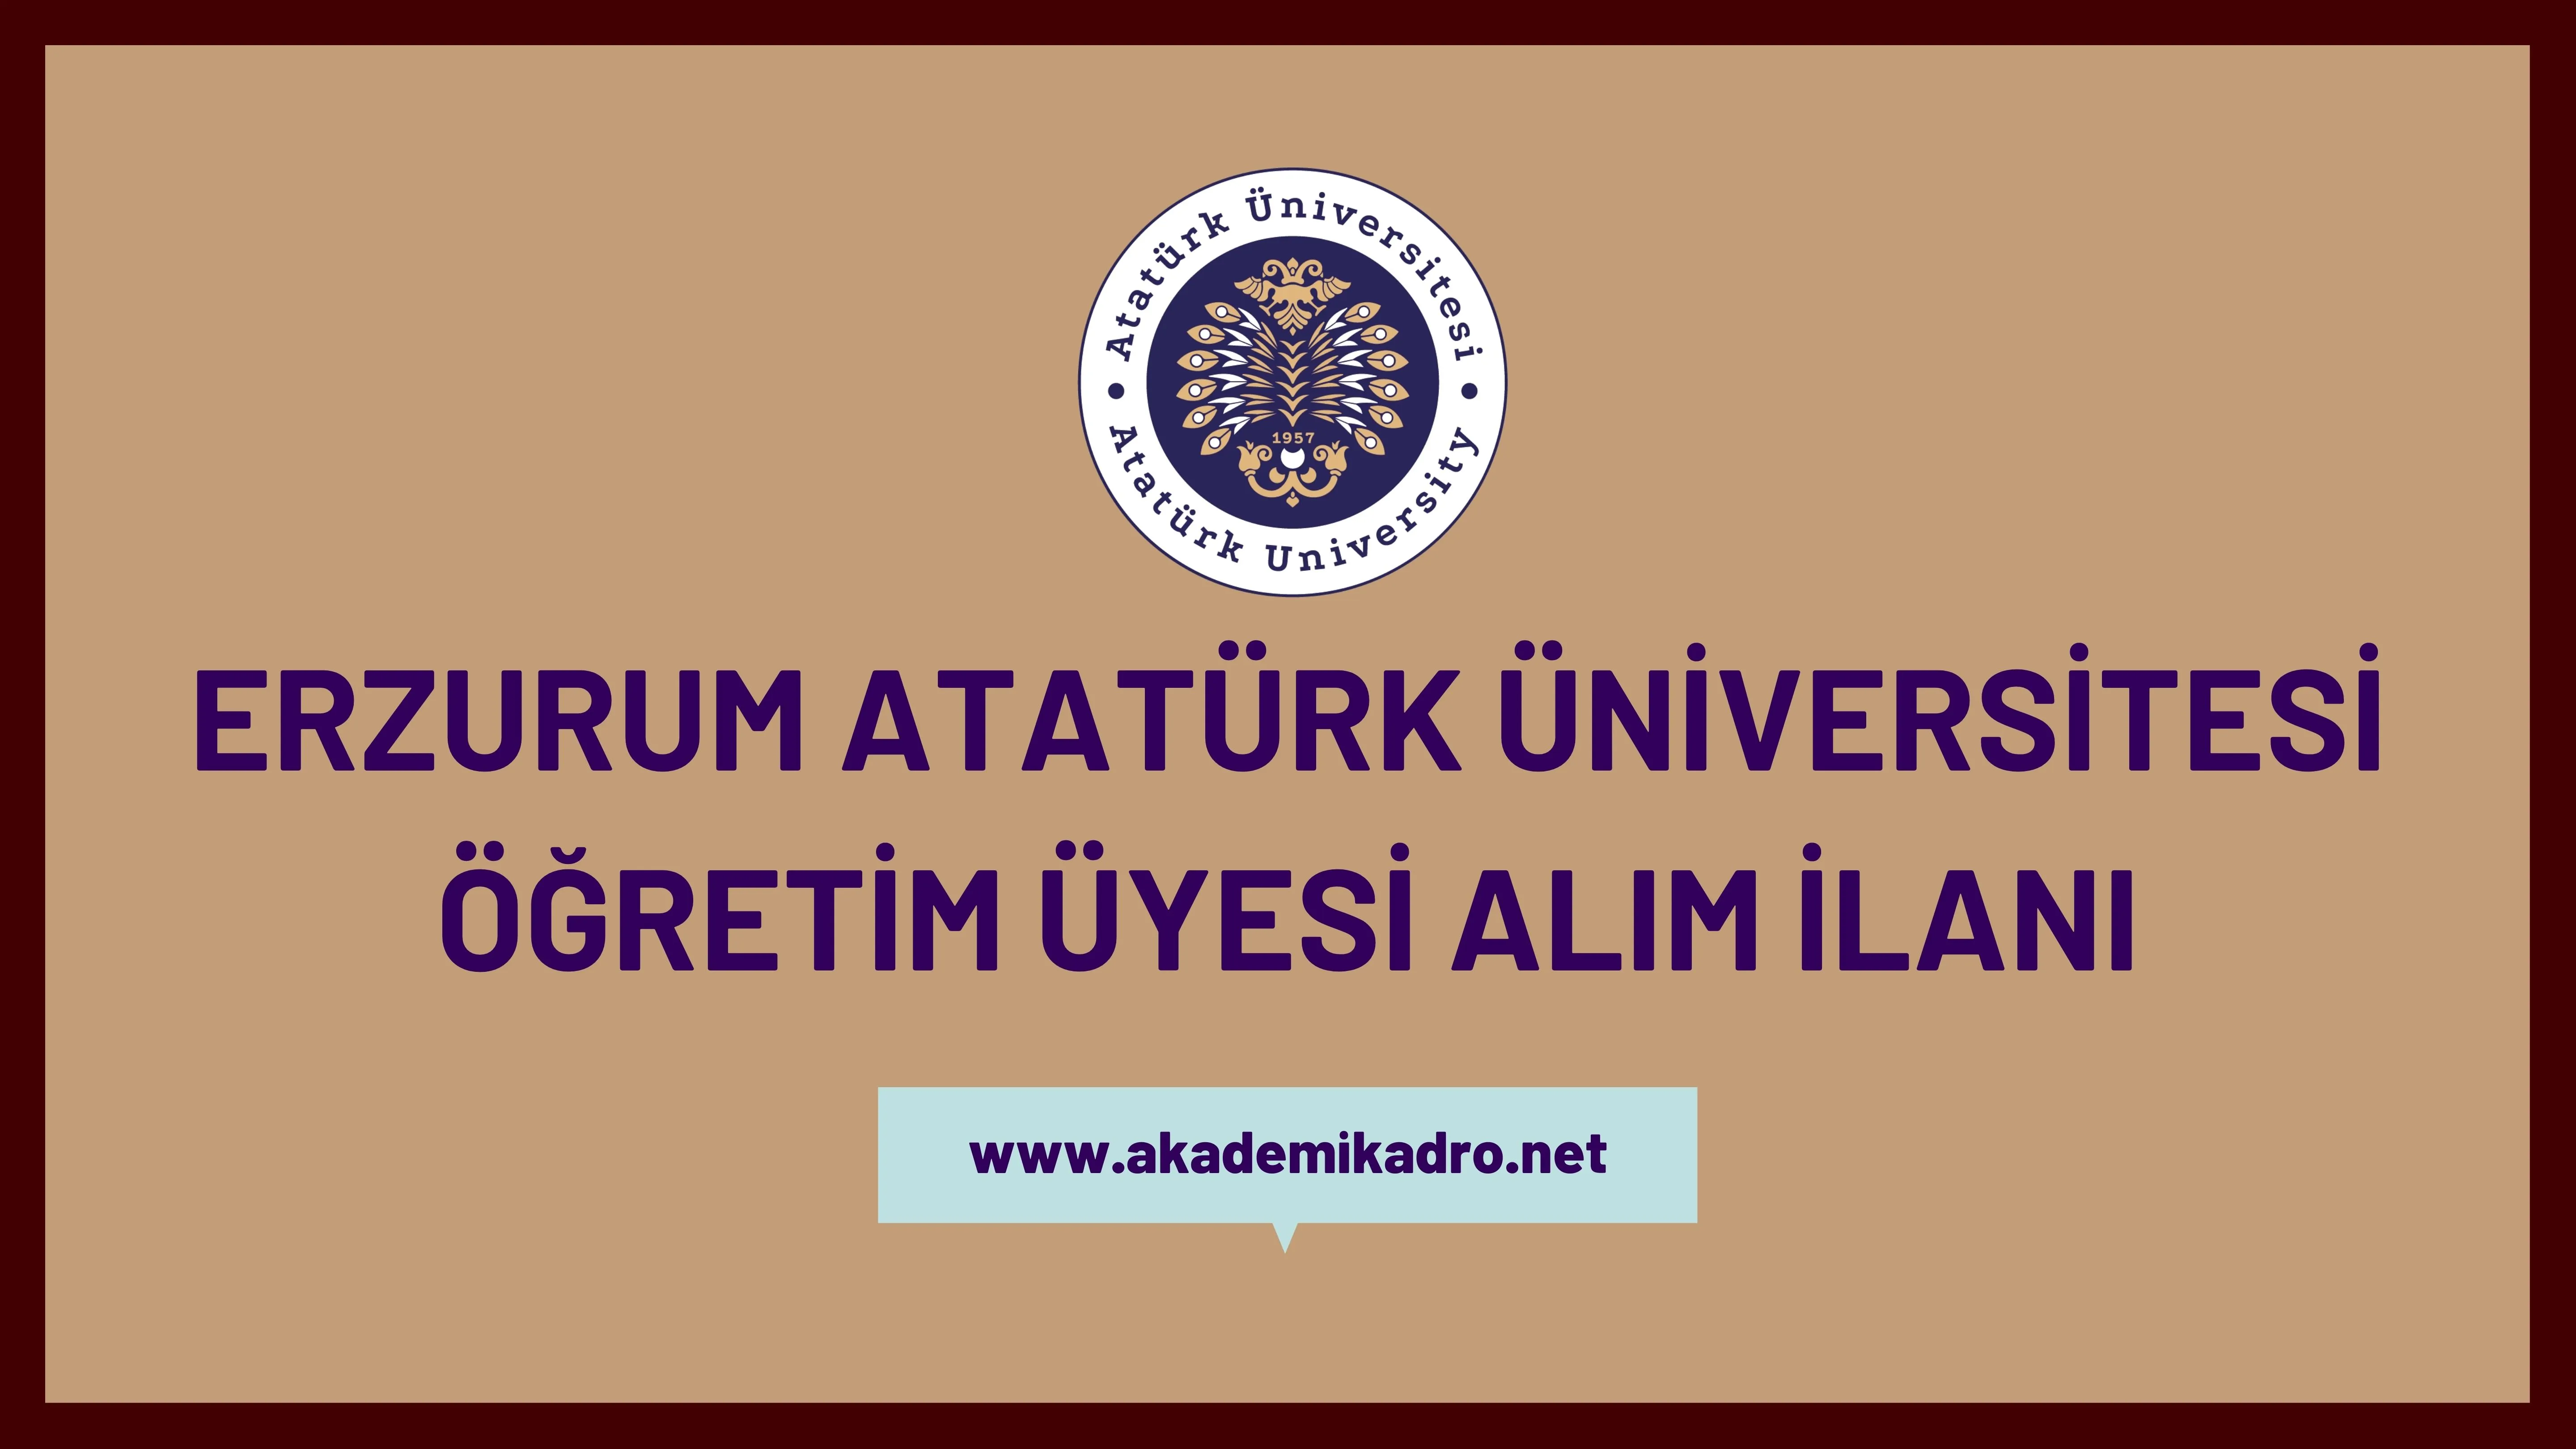 Atatürk Üniversitesi 10 akademik personel alacak.